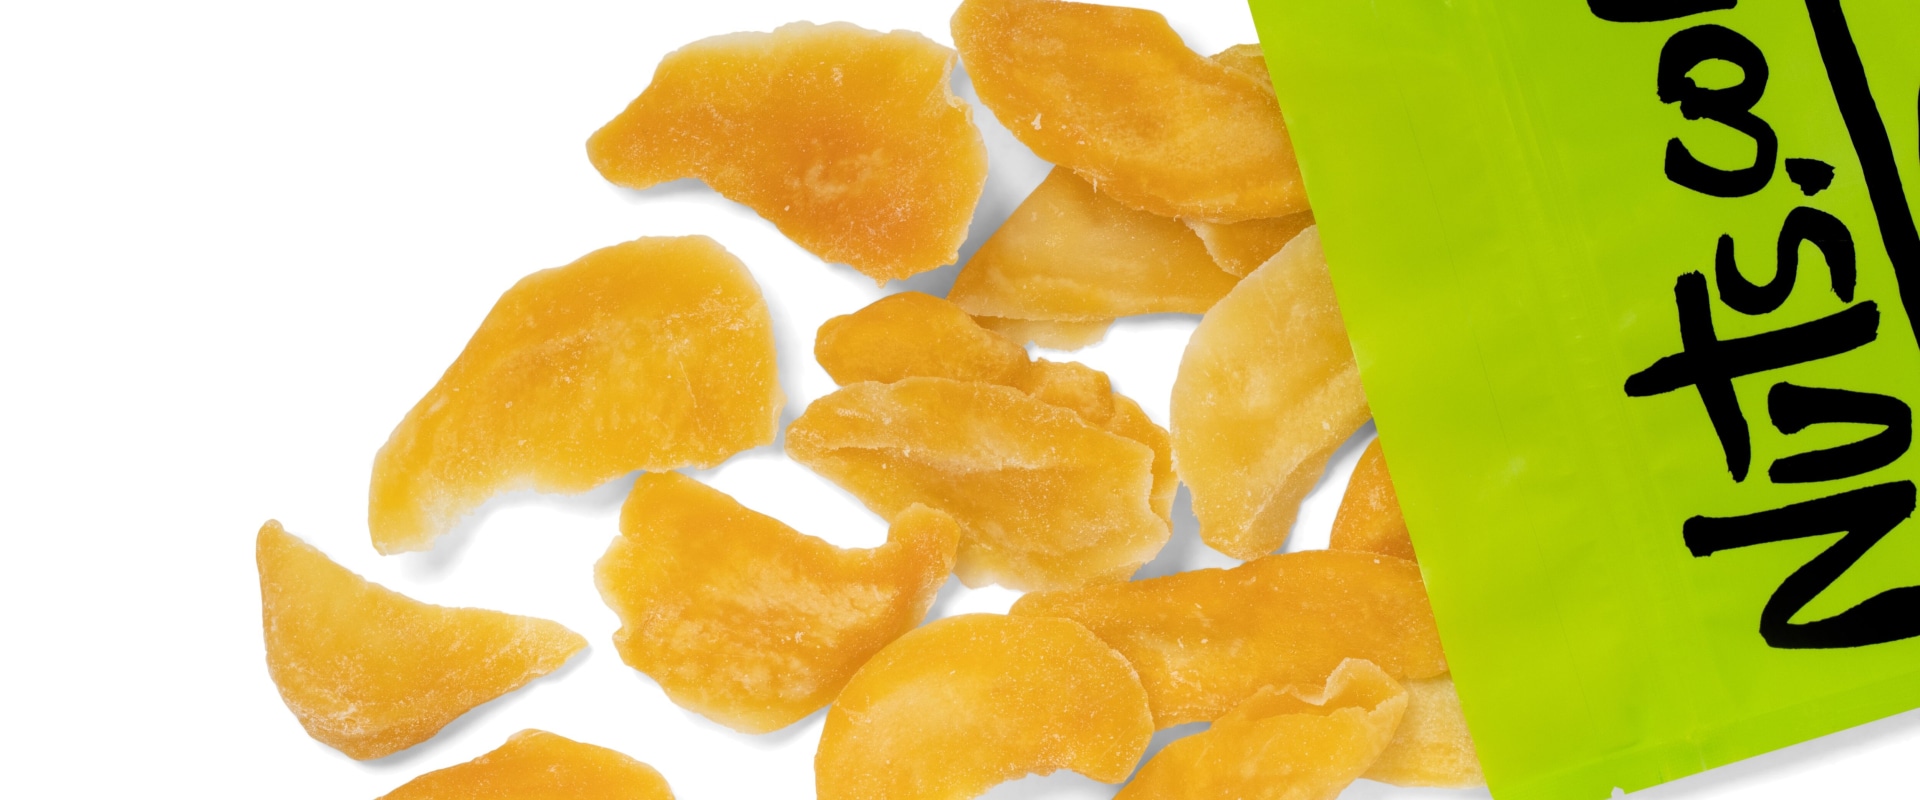 Freezing Whole Raw Mangoes: Tips and Tricks